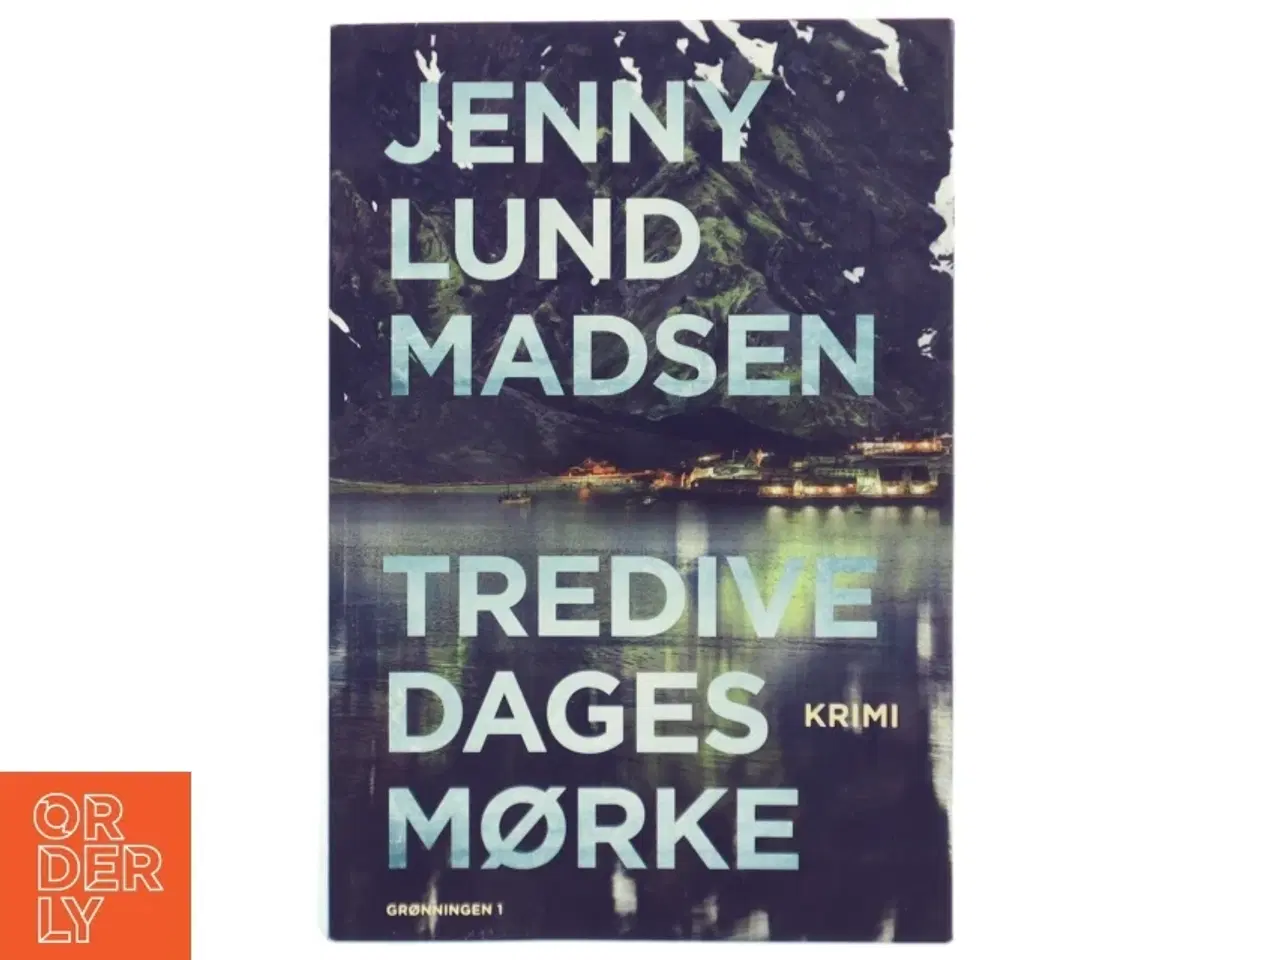 Billede 1 - 'Tredive dages mørke: krimi' af Jenny Lund Madsen (bog)